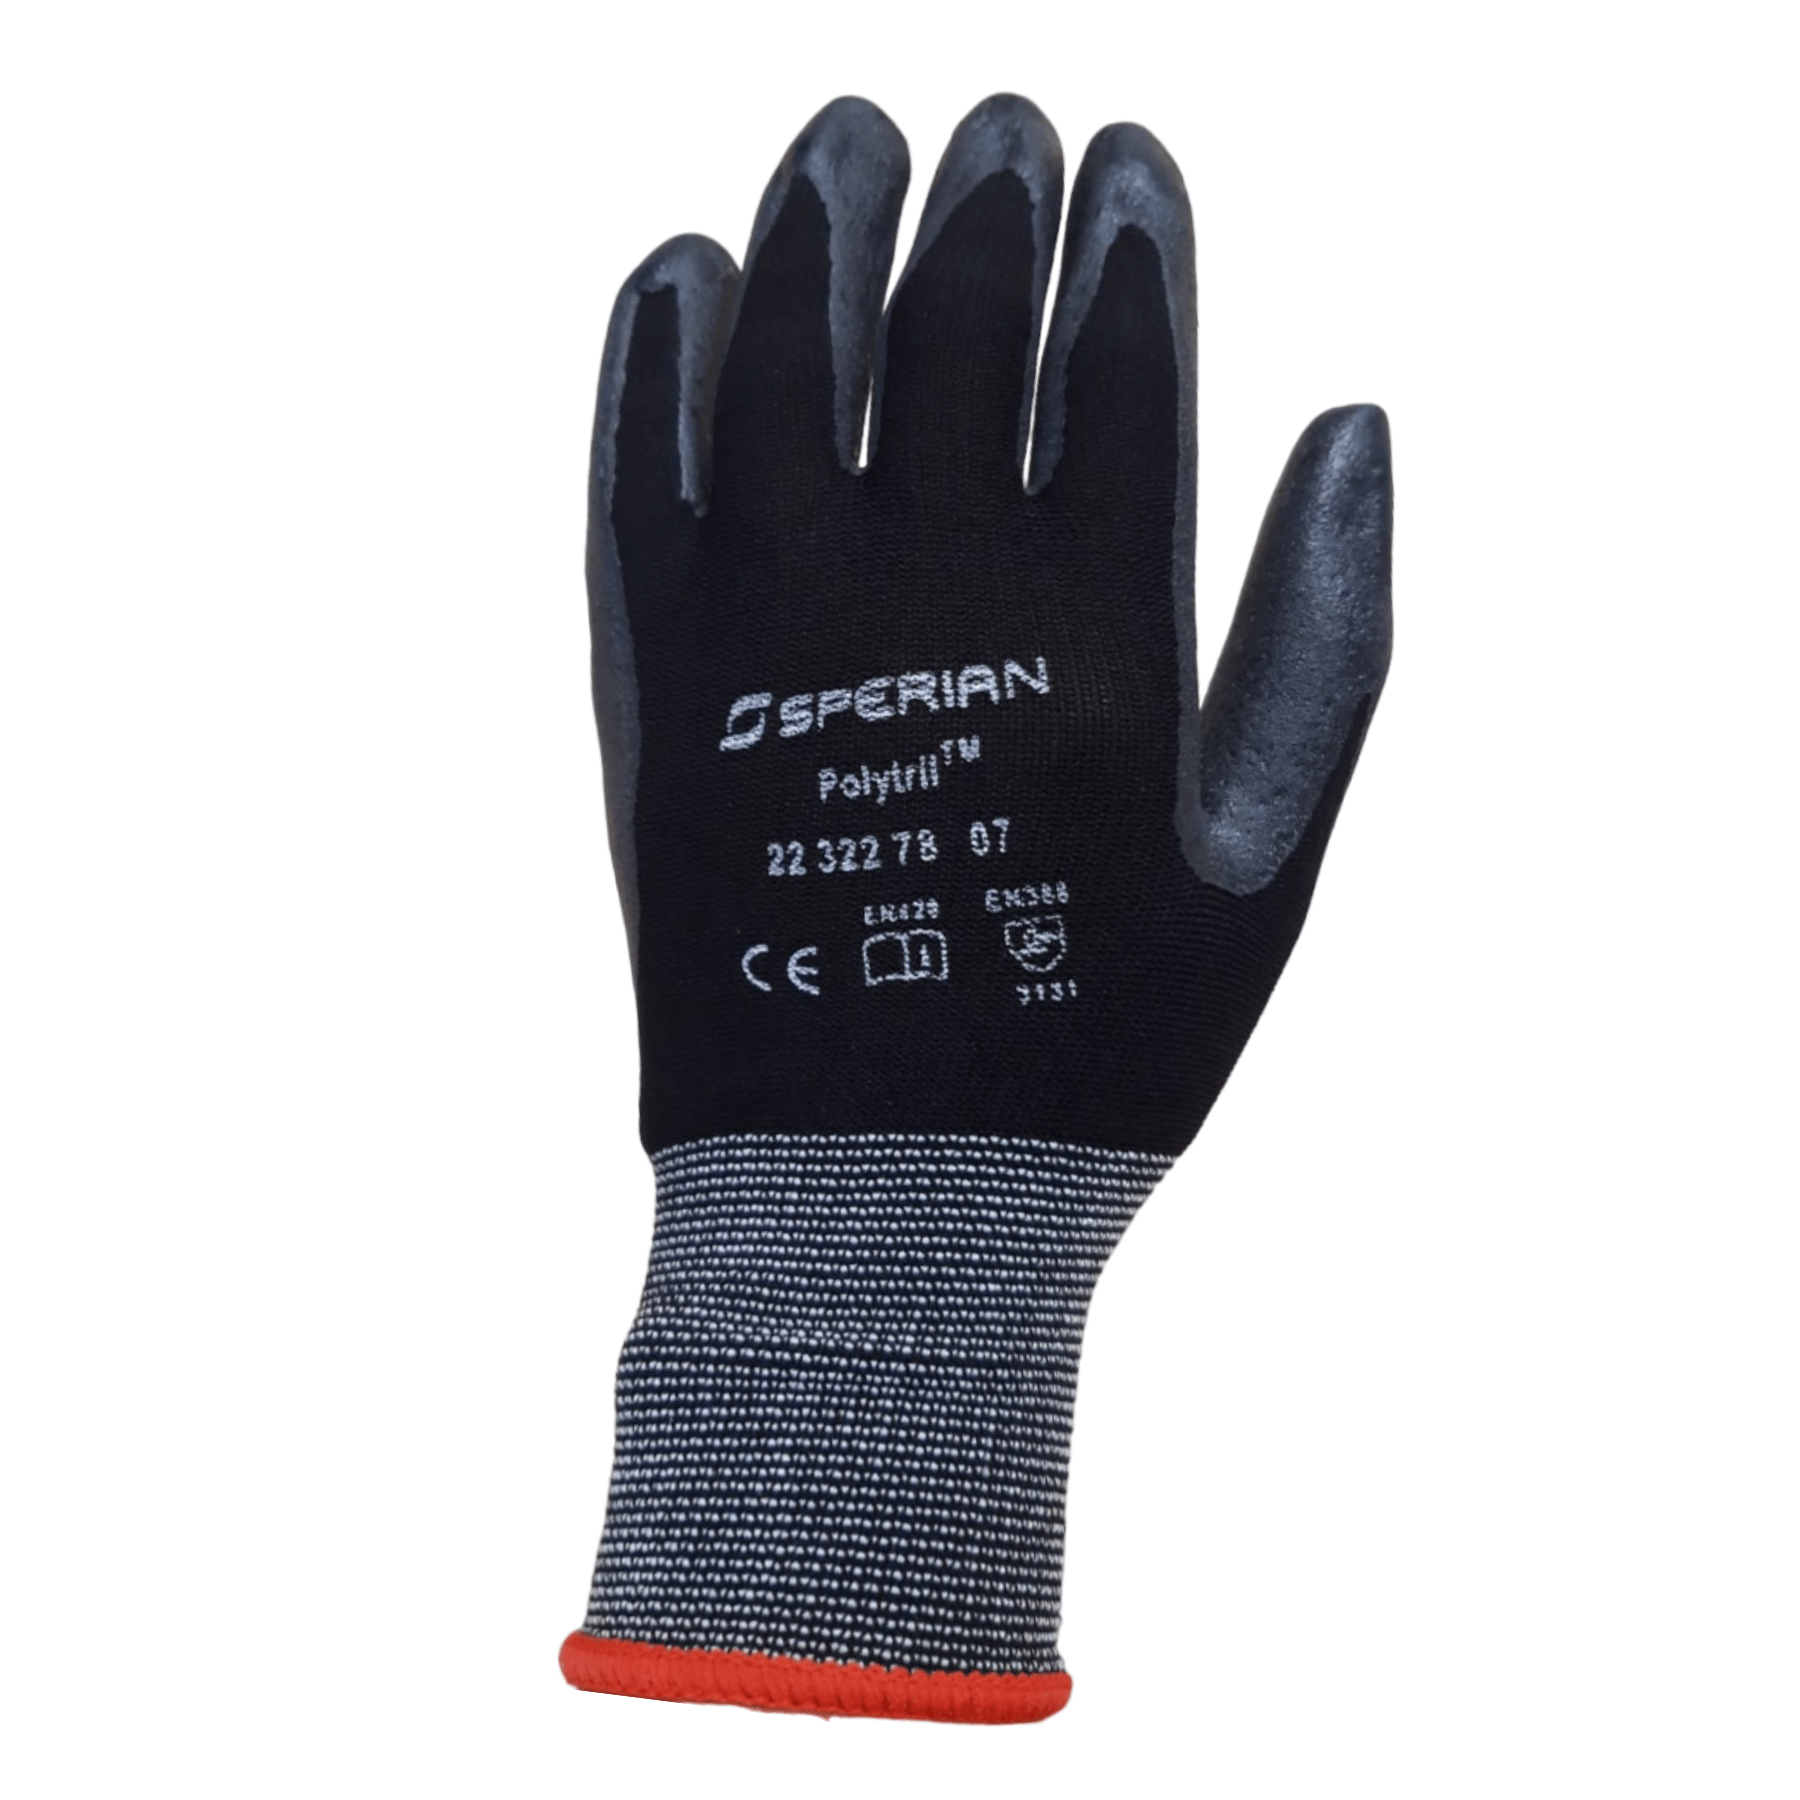 Choisir des gants de protections adaptés